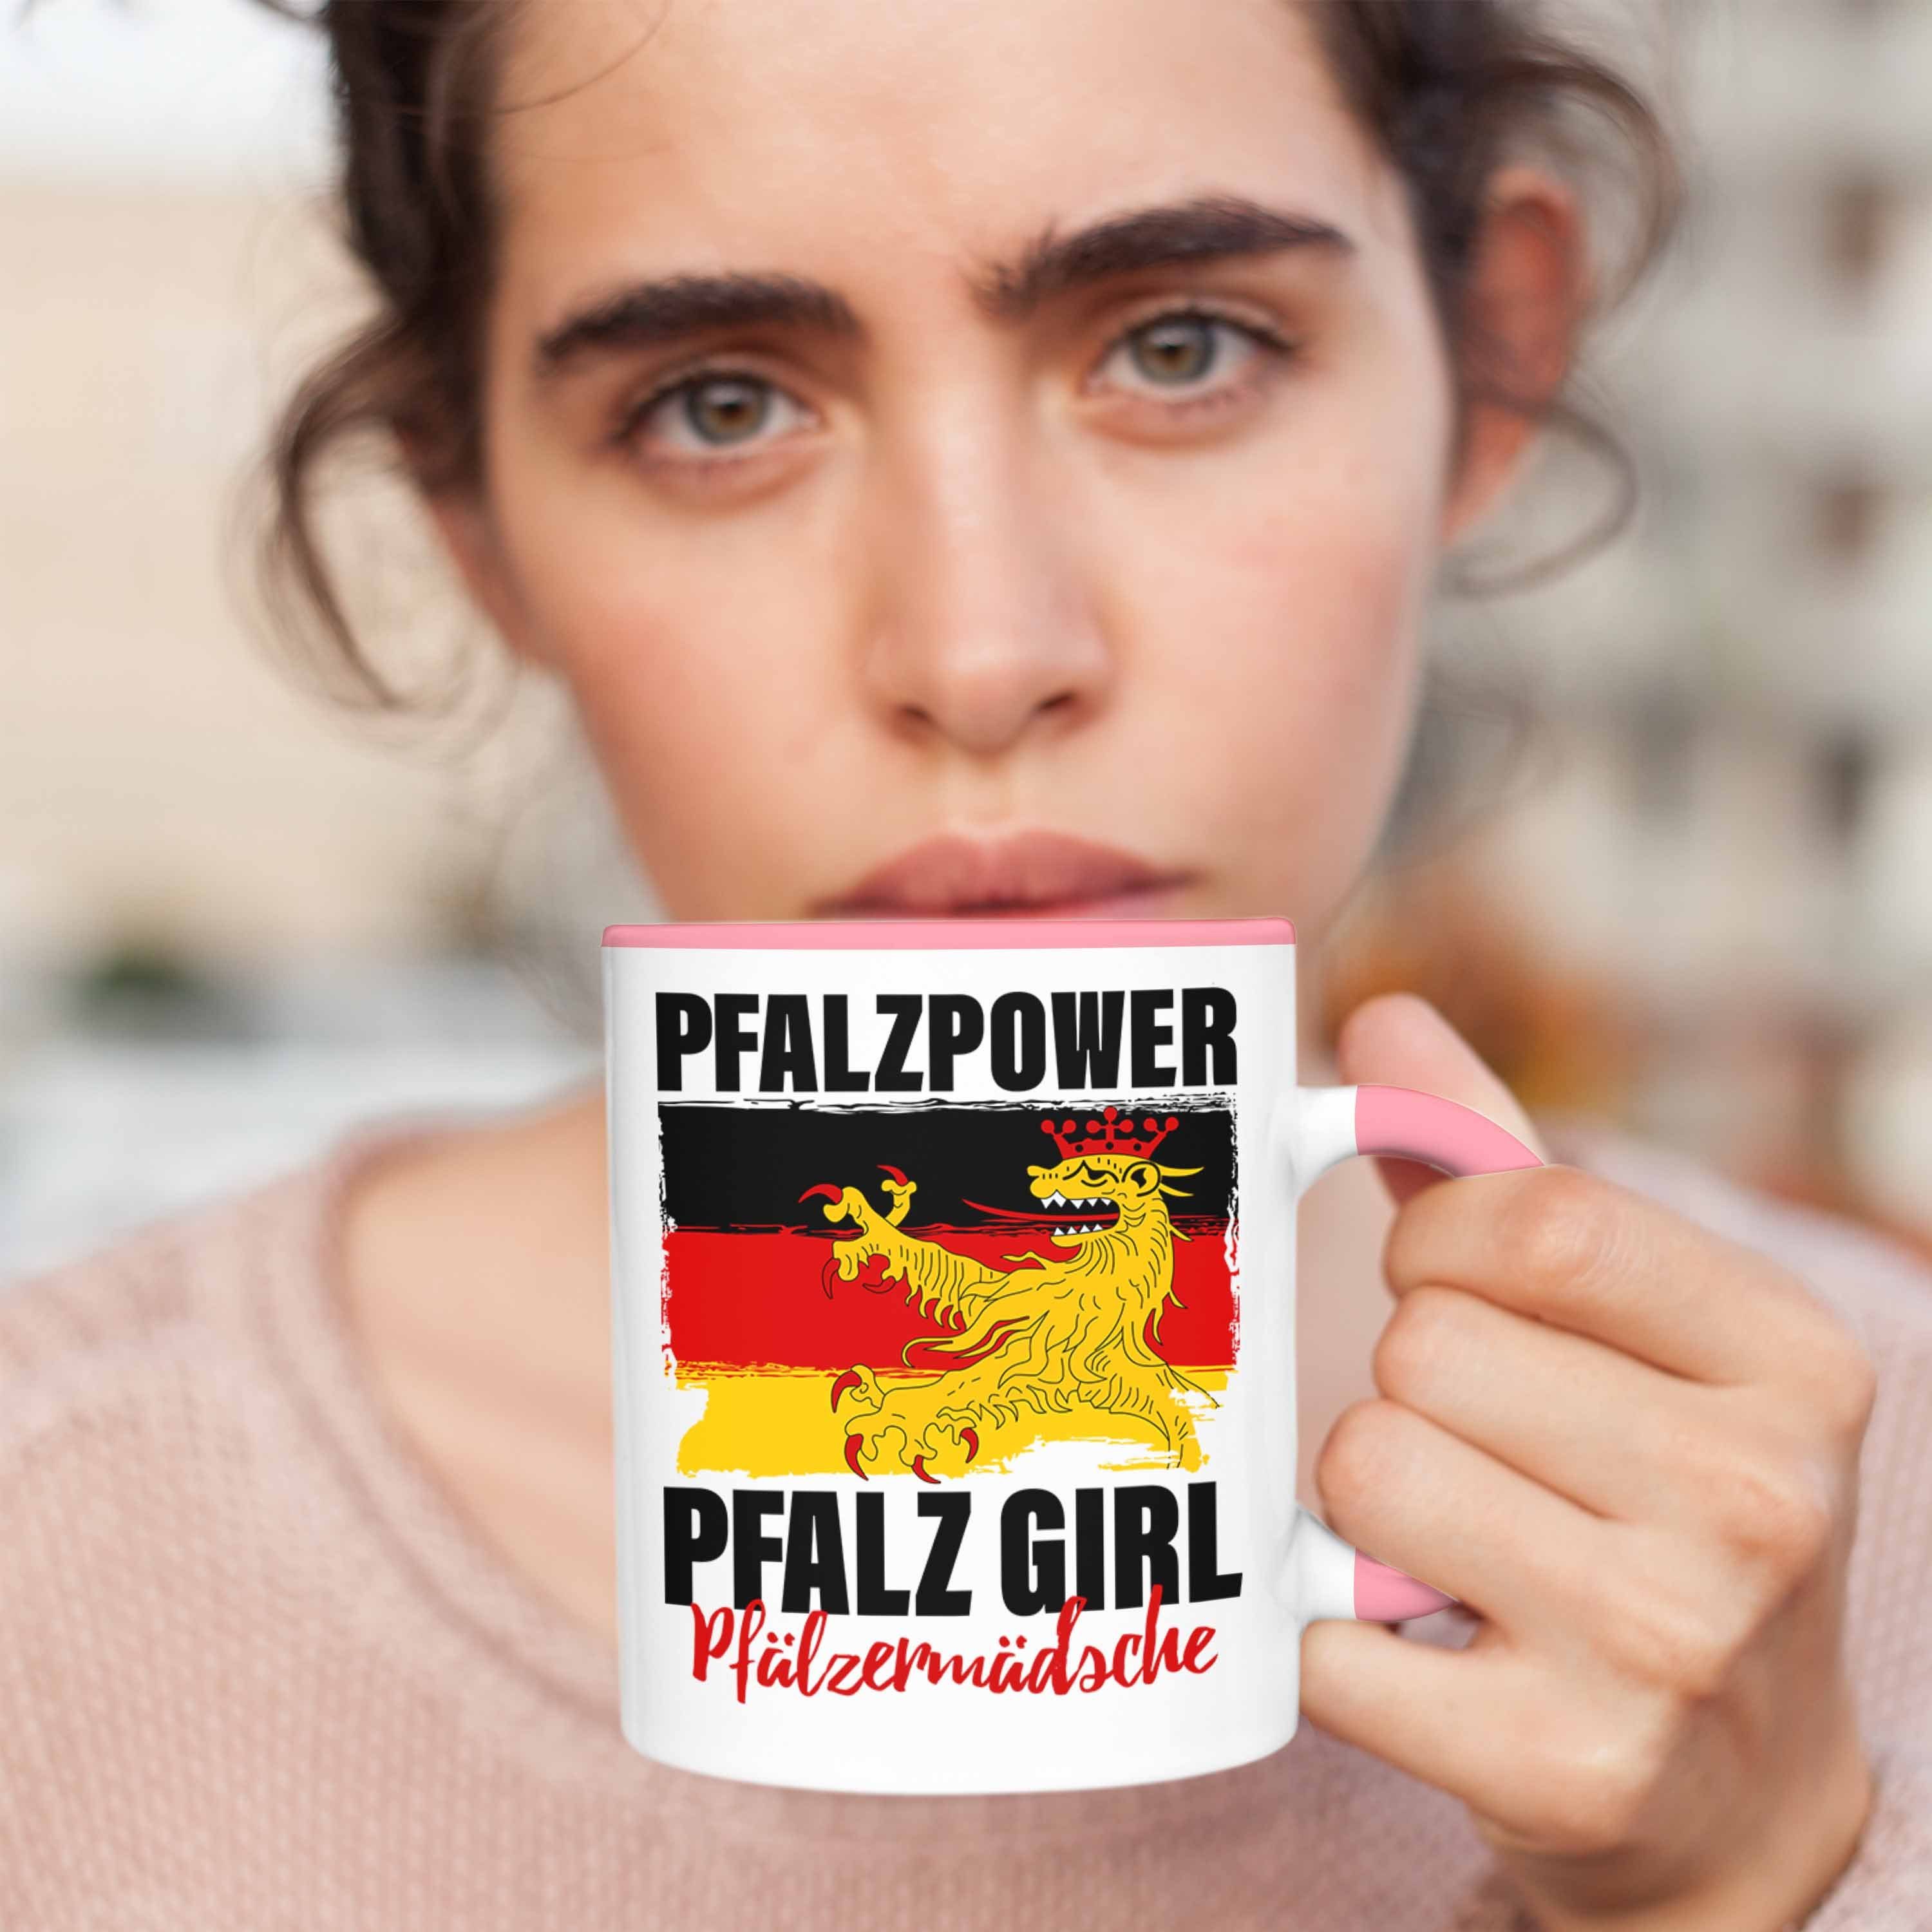 Trendation Tasse Pfalzpower Frauen Pfalzmädsche Tasse Geschenk Rosa Girl Pfalz